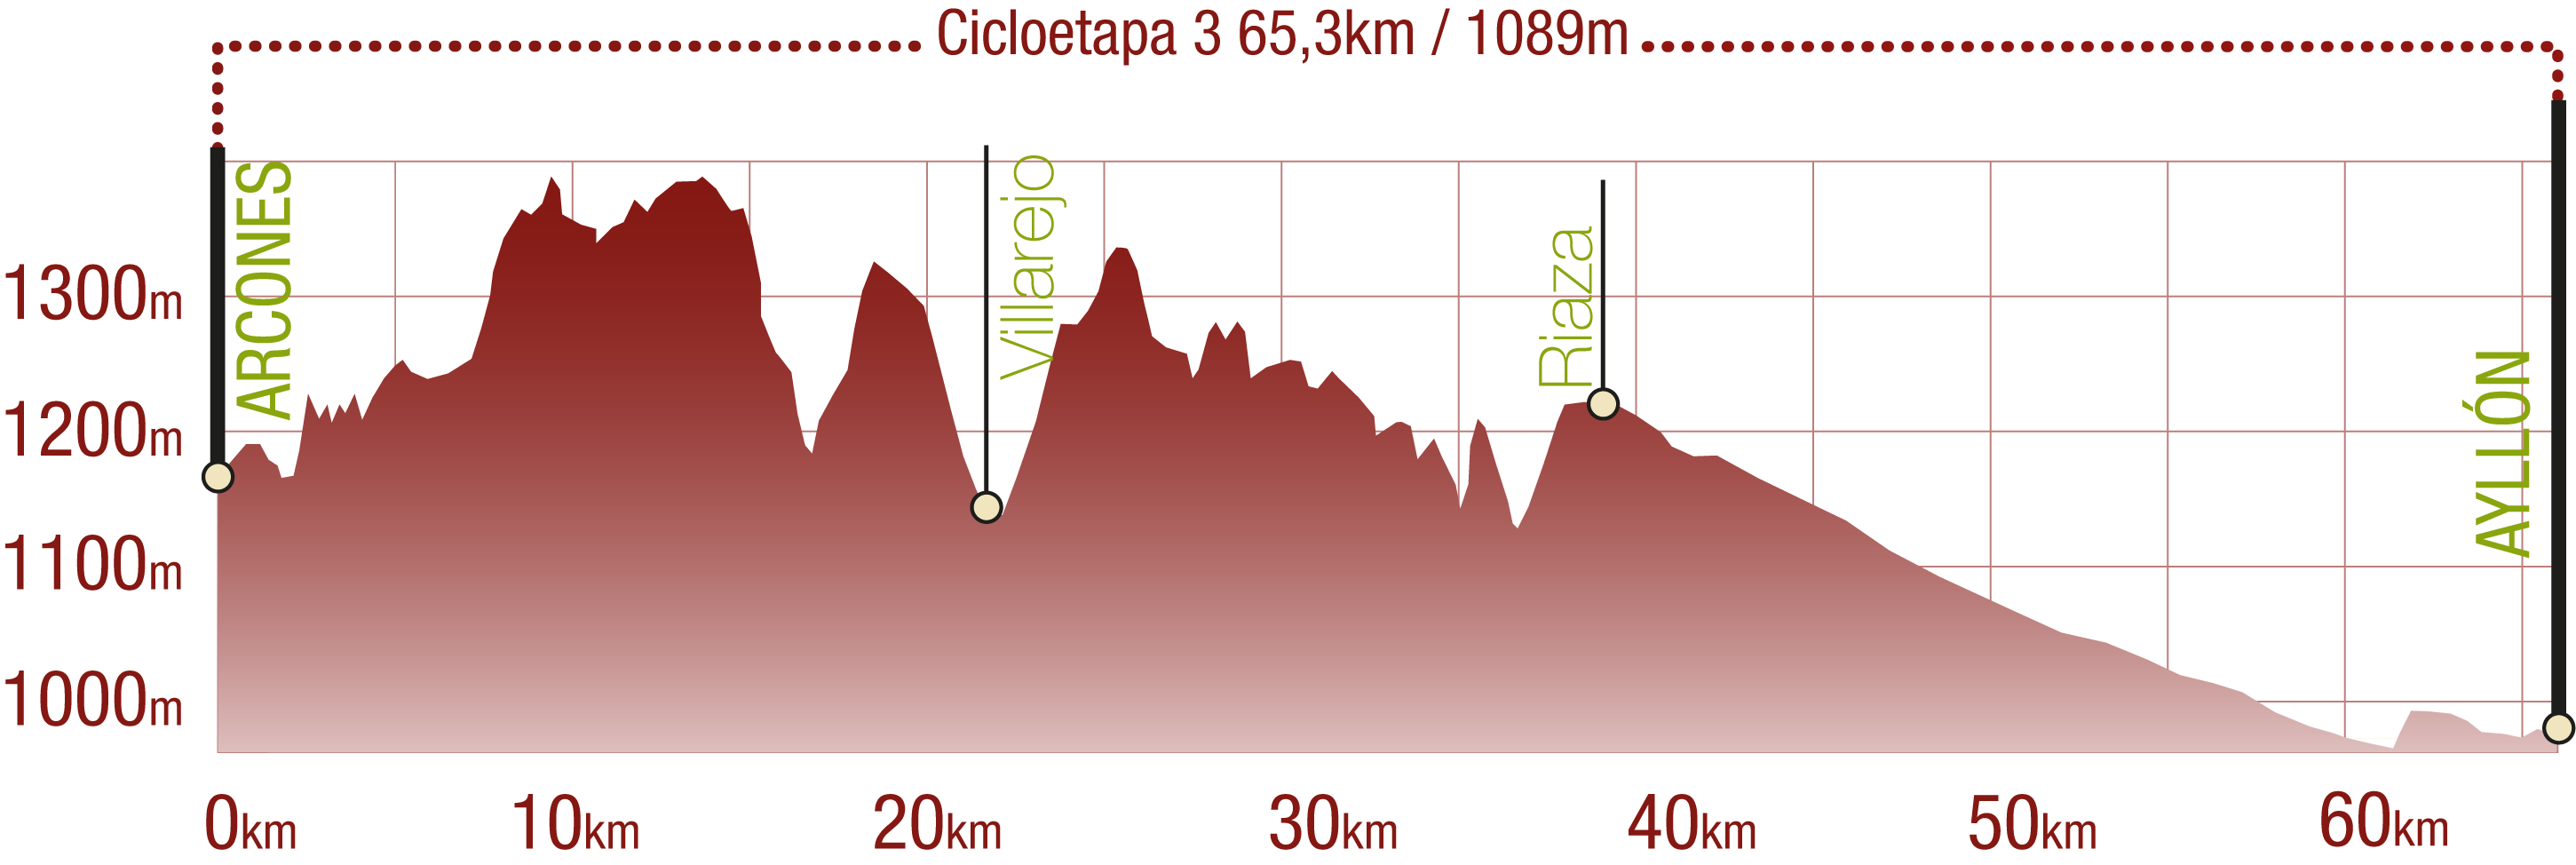 Perfil 
Perfil de la Cicloetapa 3 del CN de la Cañada Real Soriana Occidental: 65,3 km / Desnivel de subida 1089 m

